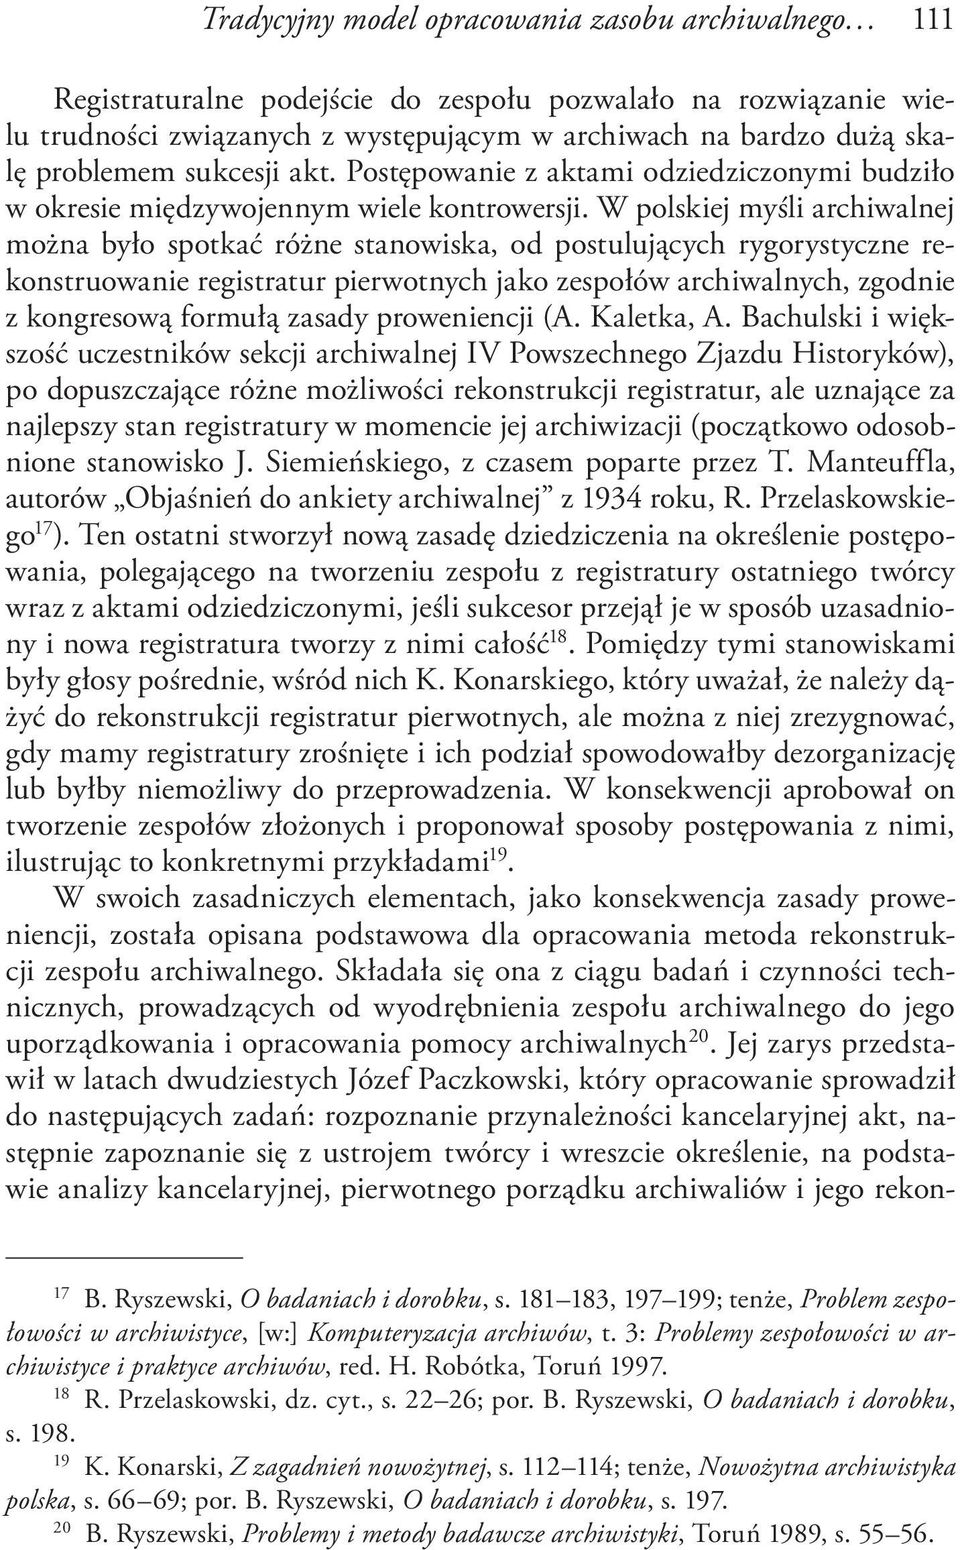 W polskiej myśli archiwalnej można było spotkać różne stanowiska, od postulujących rygorystyczne rekonstruowanie registratur pierwotnych jako zespołów archiwalnych, zgodnie z kongresową formułą